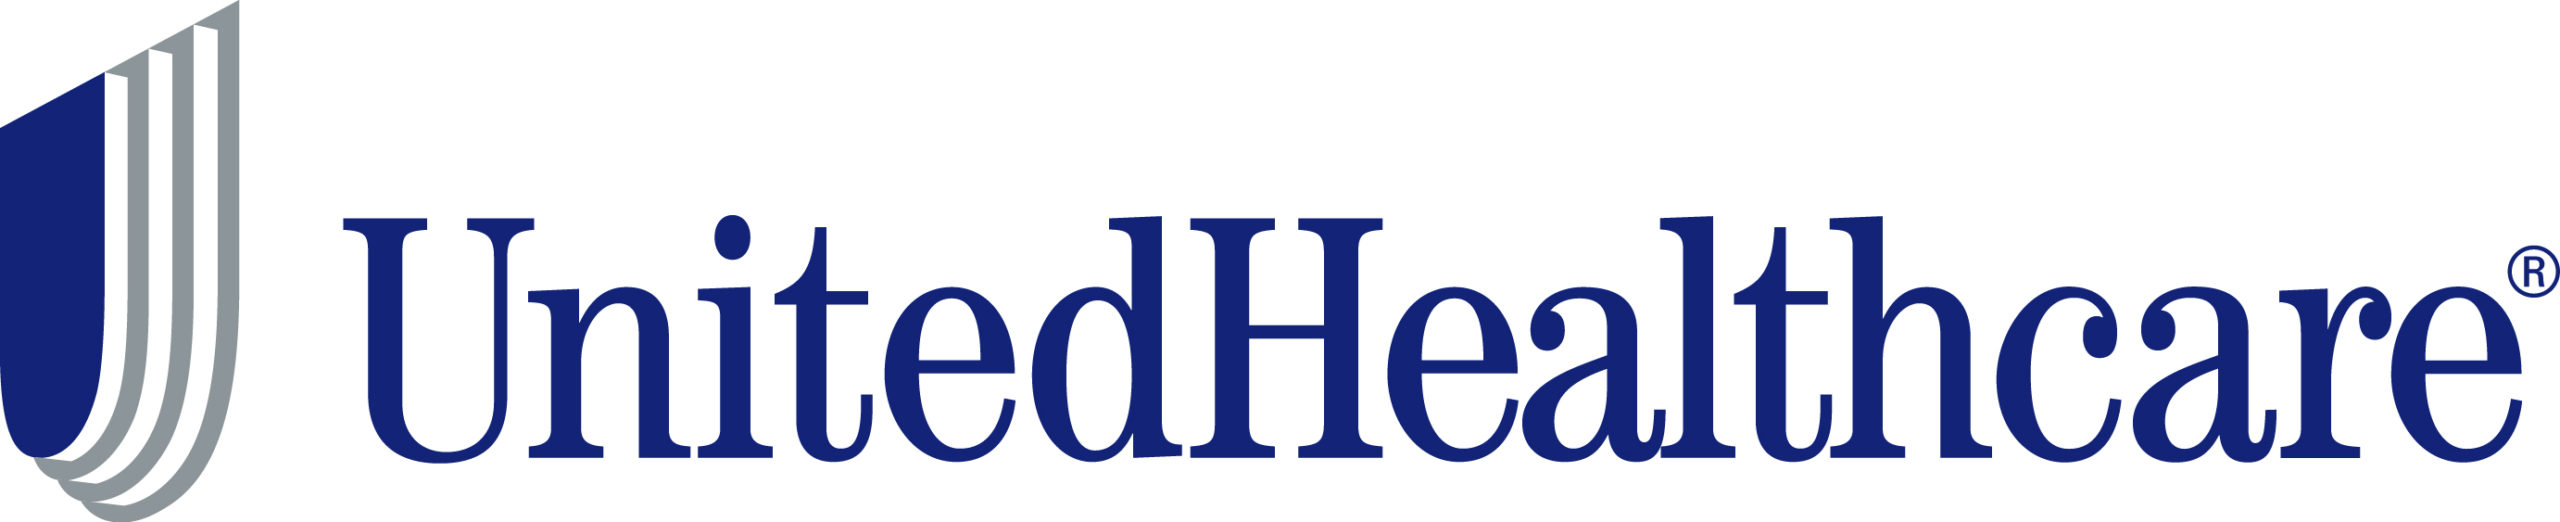 United Health Group logo | Buffalo, NY | Sheridan Benefits, LLC